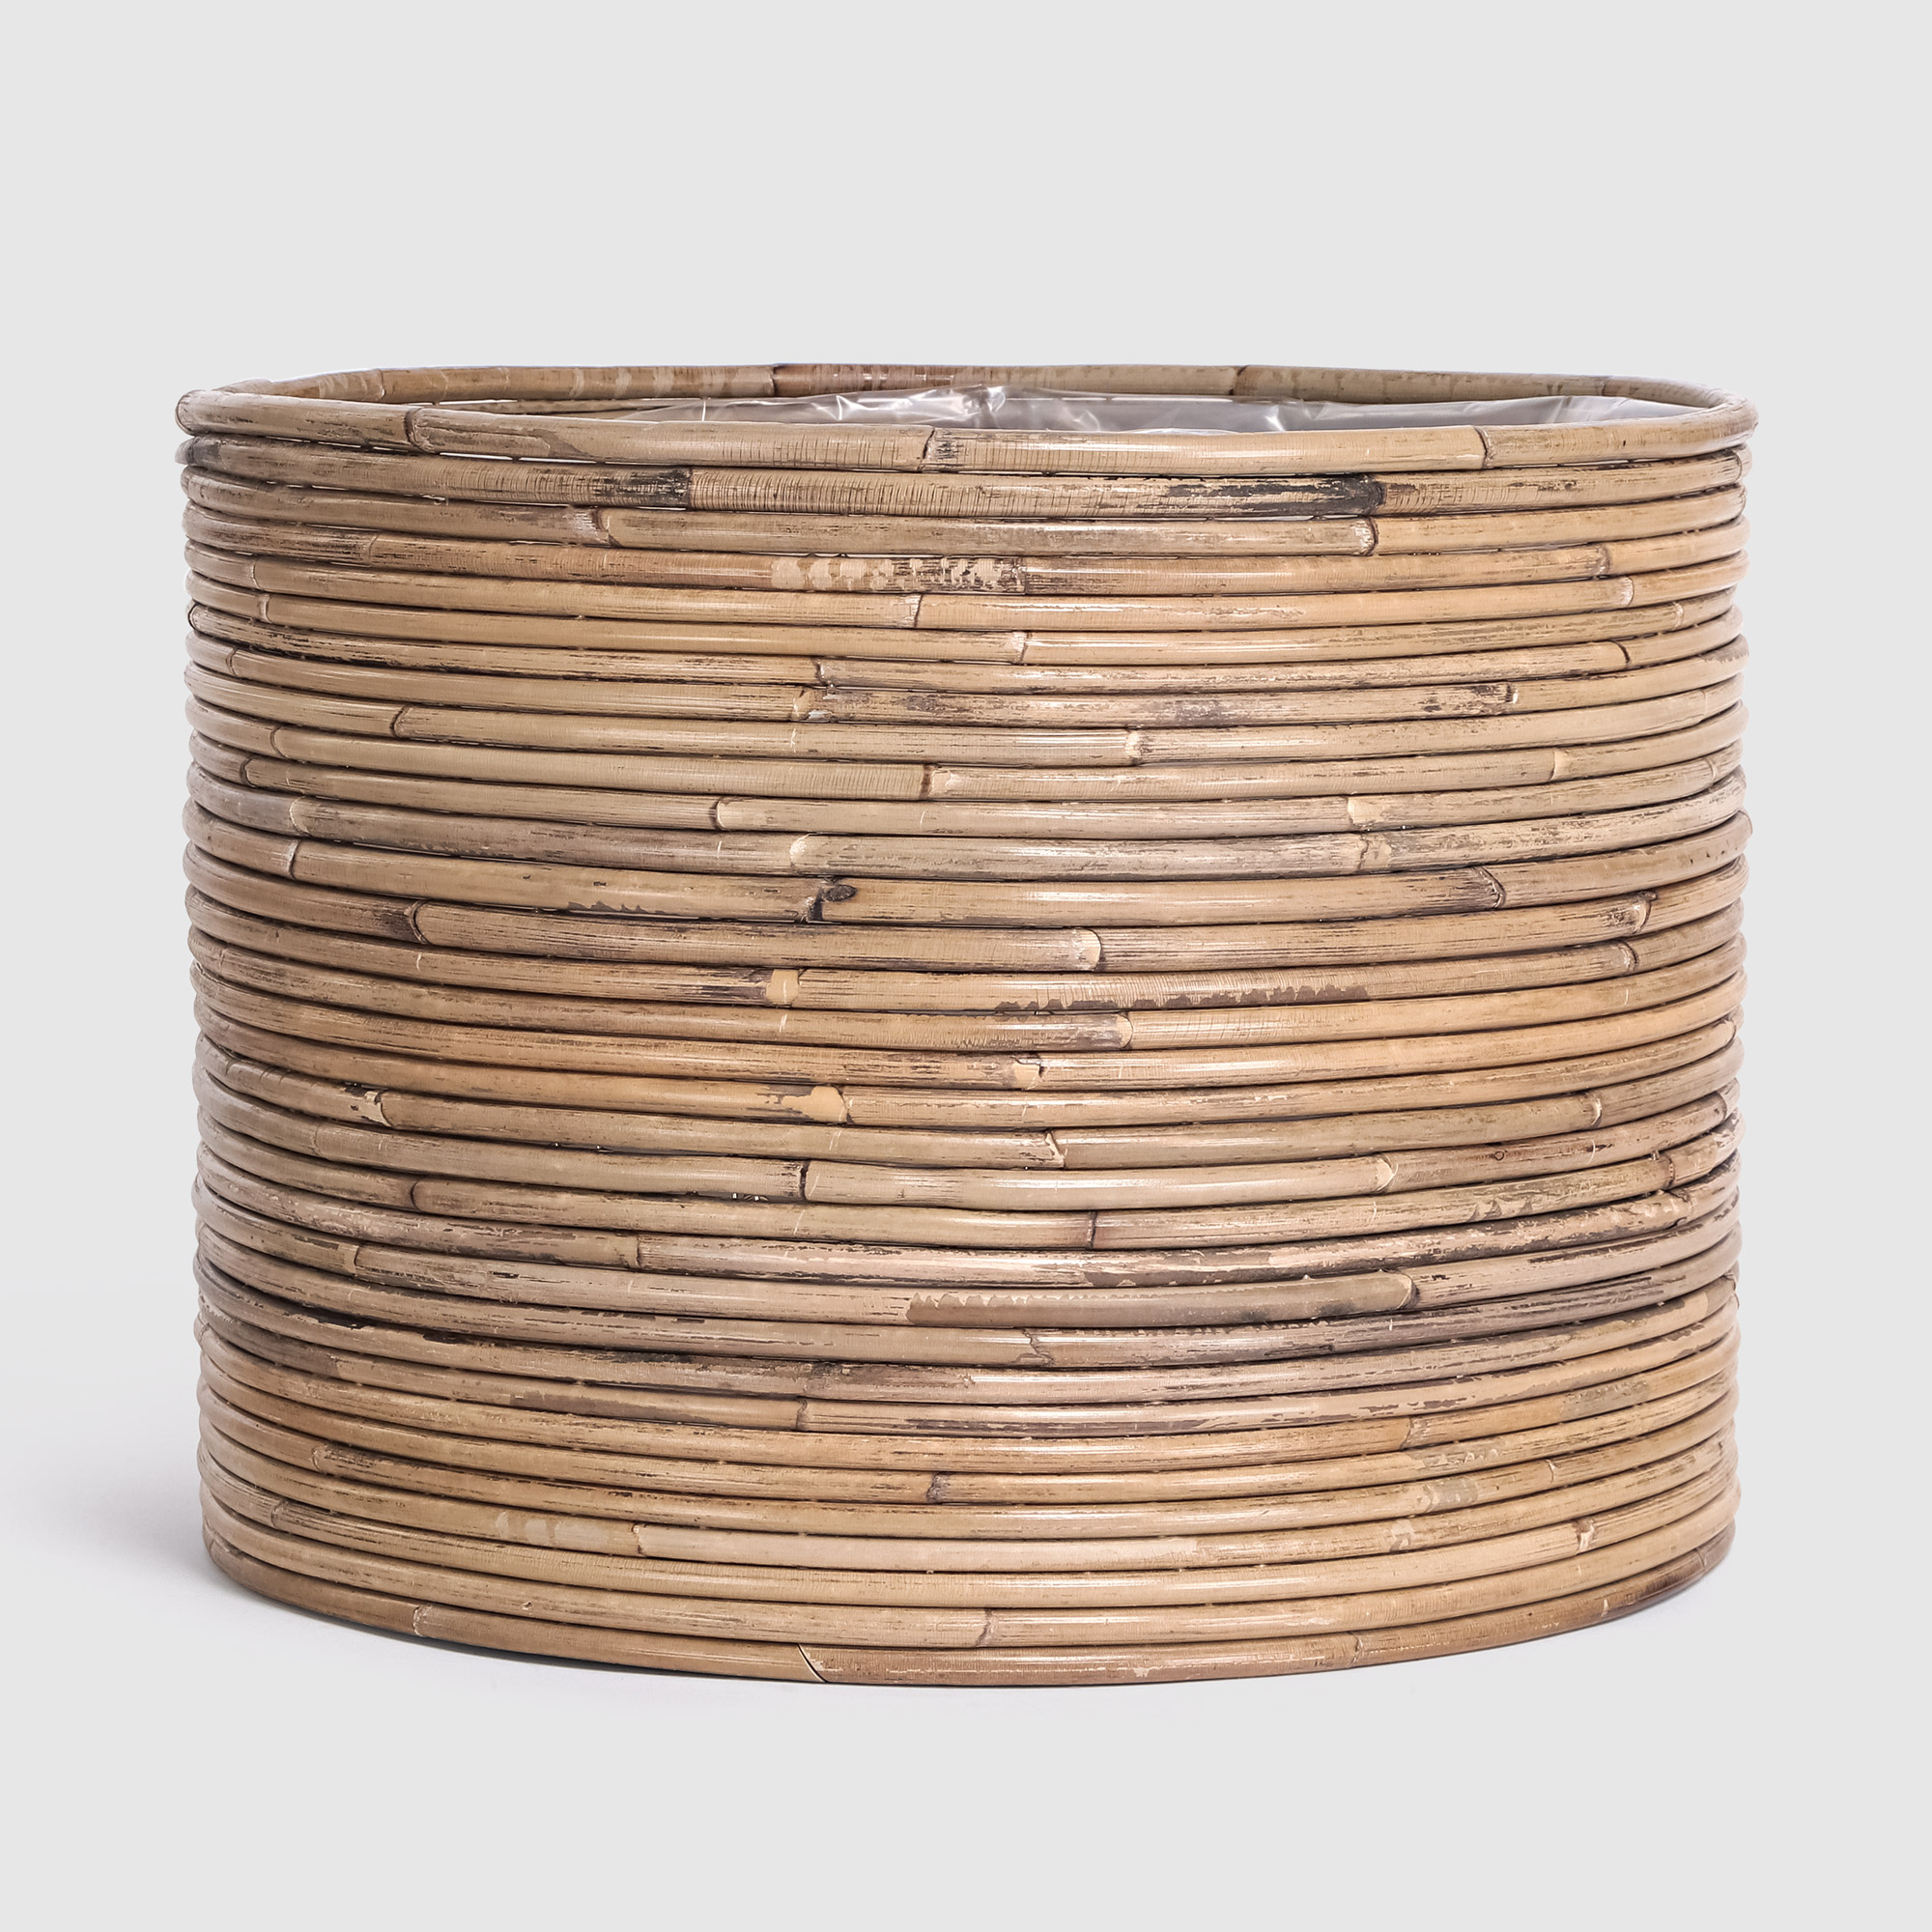 Кашпо Van der leeden Cylinder Stripe бежевое с коричневым 30х20 см